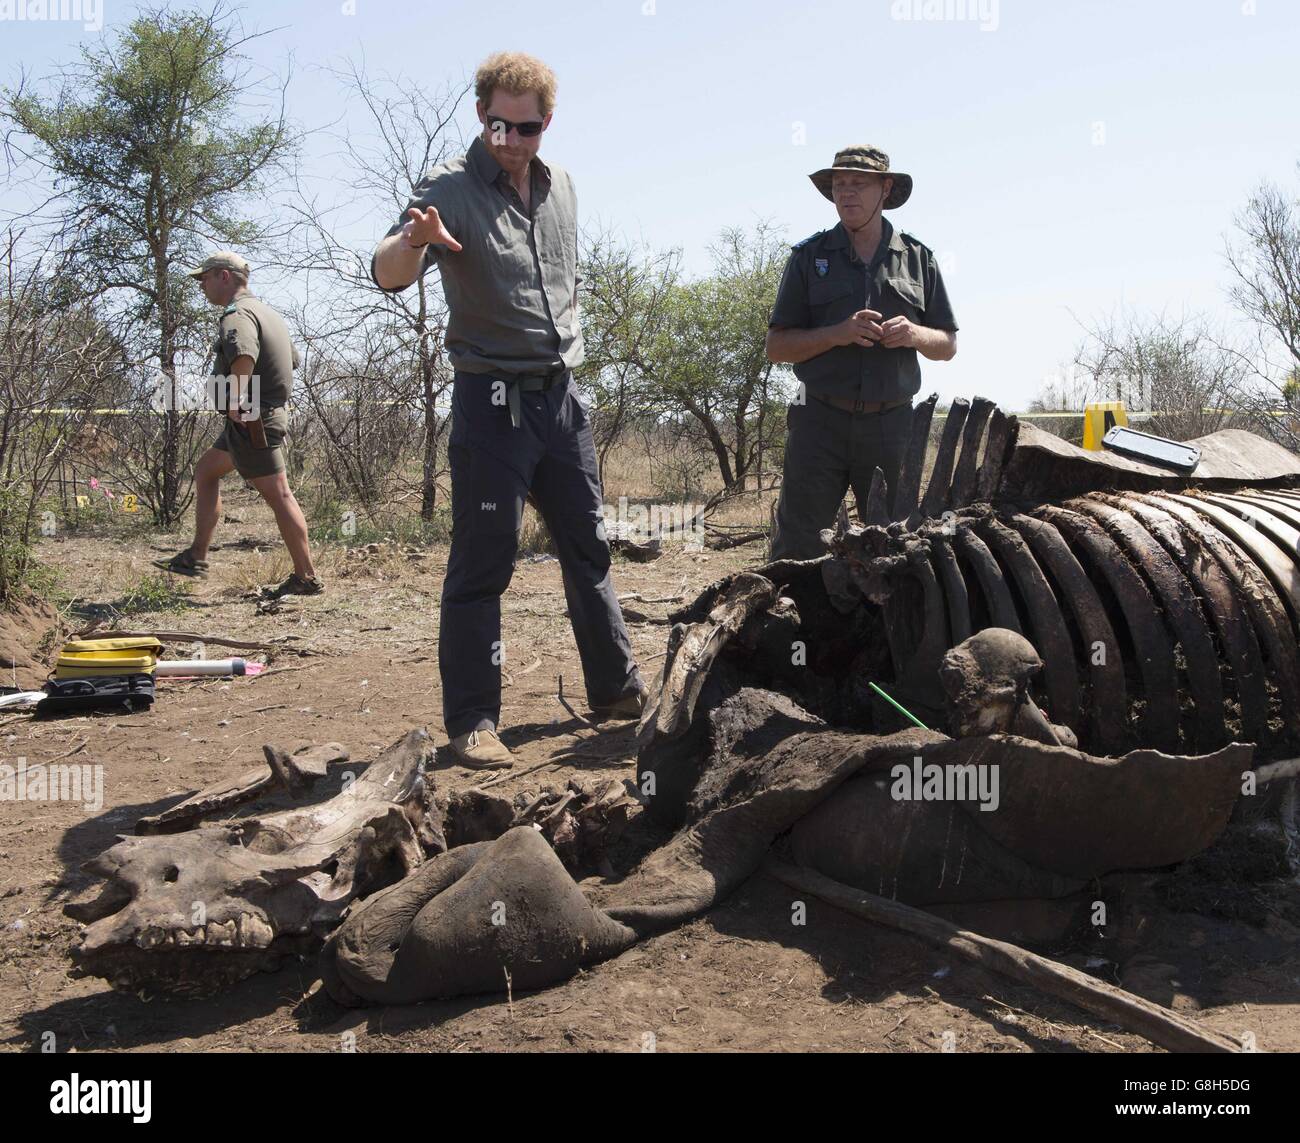 ANMERKUNG: GRAFISCHE INHALTE Prinz Harry besucht einen Tatort mit einem forensischen Team eines Nashorns, das von Wilderern im Krüger National Park im Rahmen seiner Südafrika-Reise getötet wurde. Stockfoto